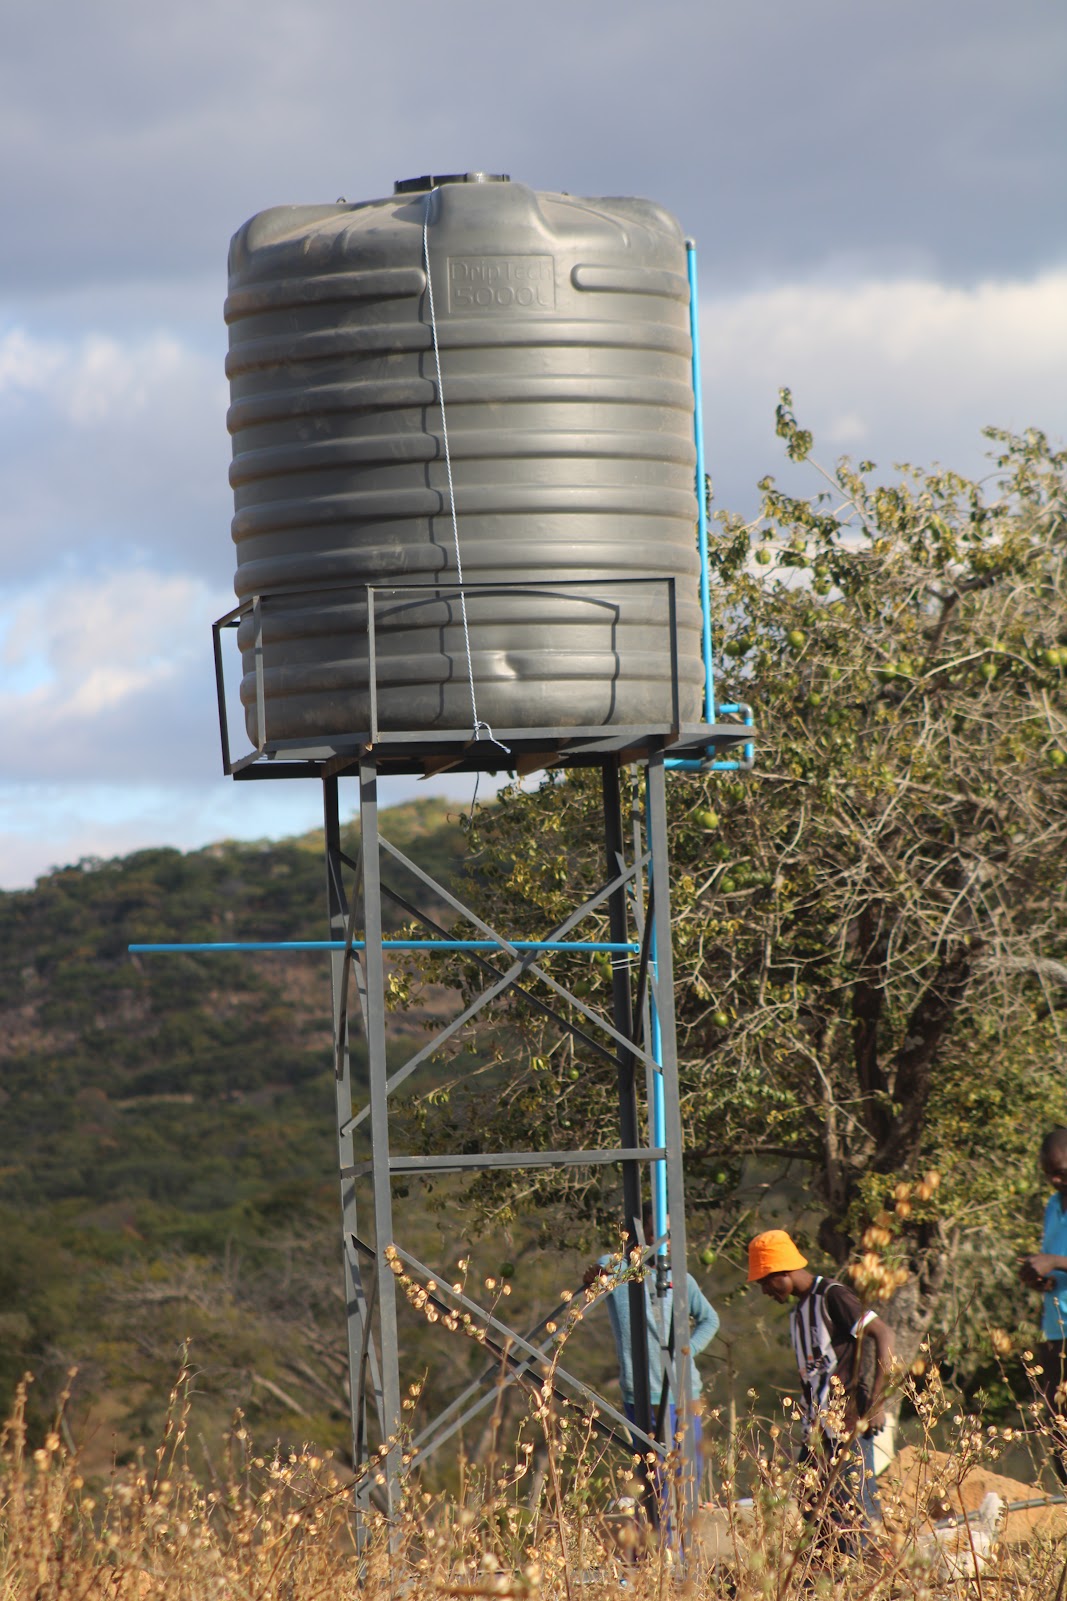 Borehole Storage Tanks in Zimbabwe